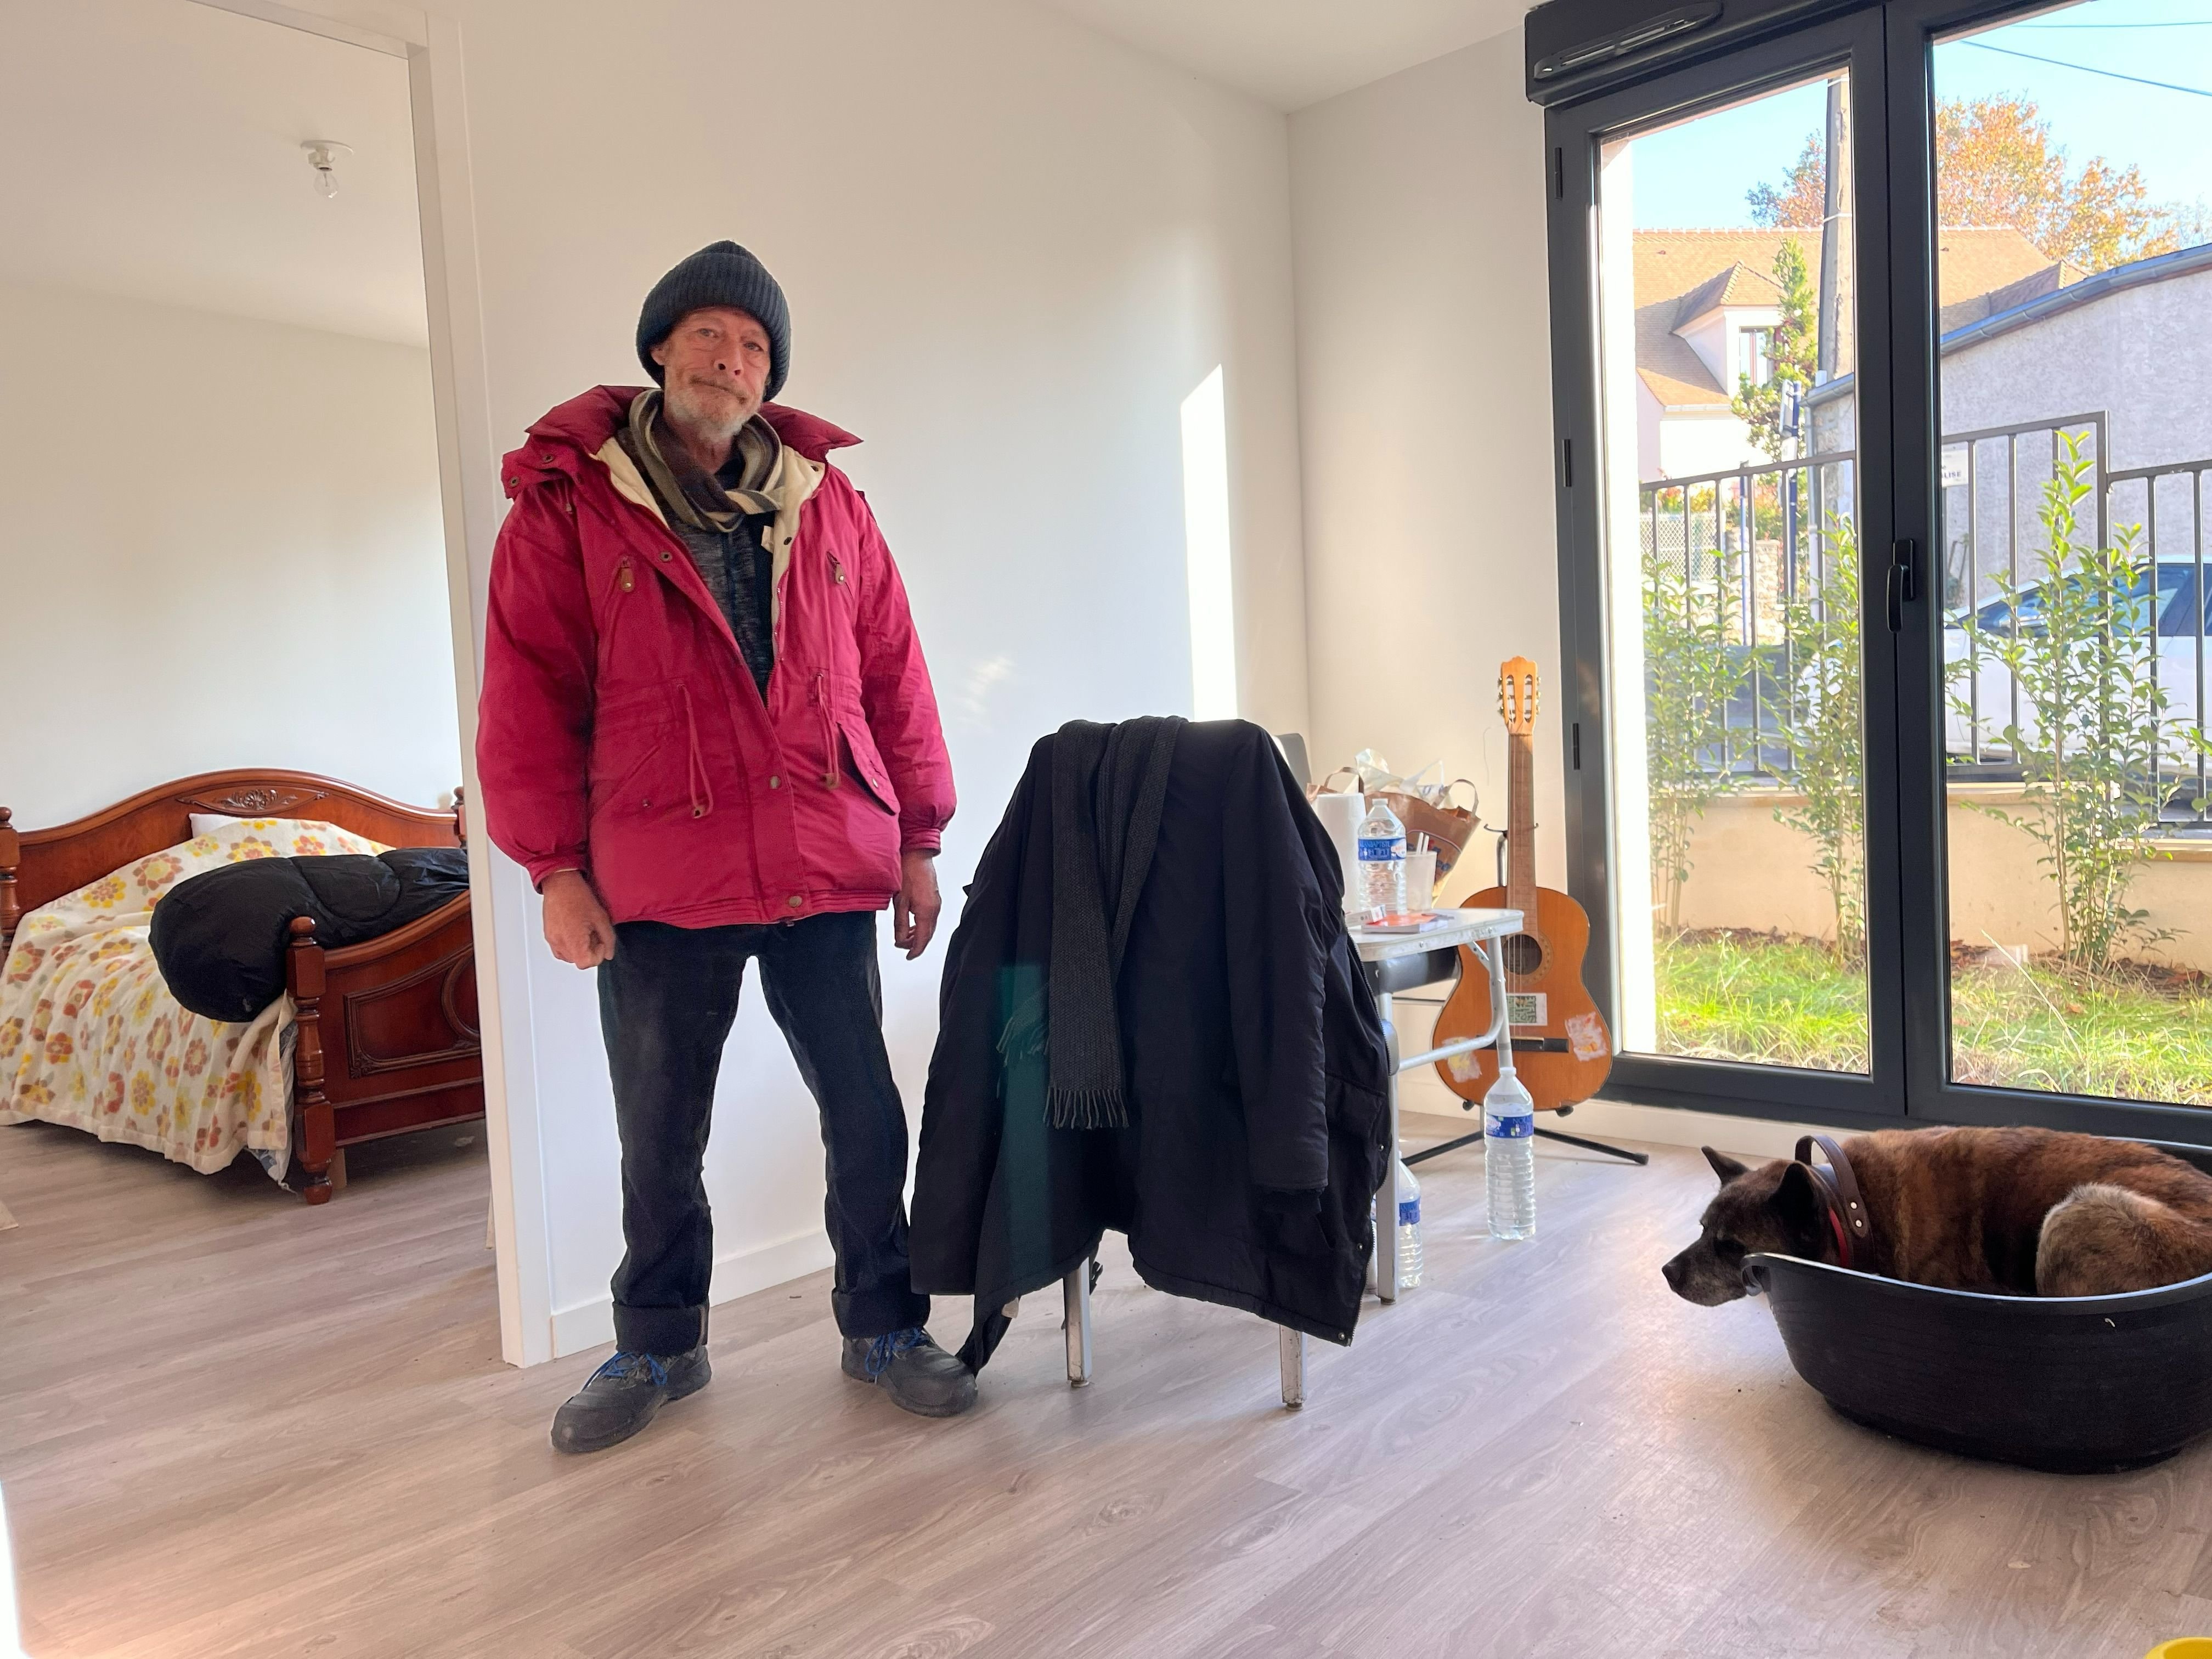 Épinay-sur-Orge (Essonne), mercredi 22 novembre. Depuis deux semaines, David et son chien Maxam vivent dans un appartement social de la ville. LP/Nolwenn Cosson